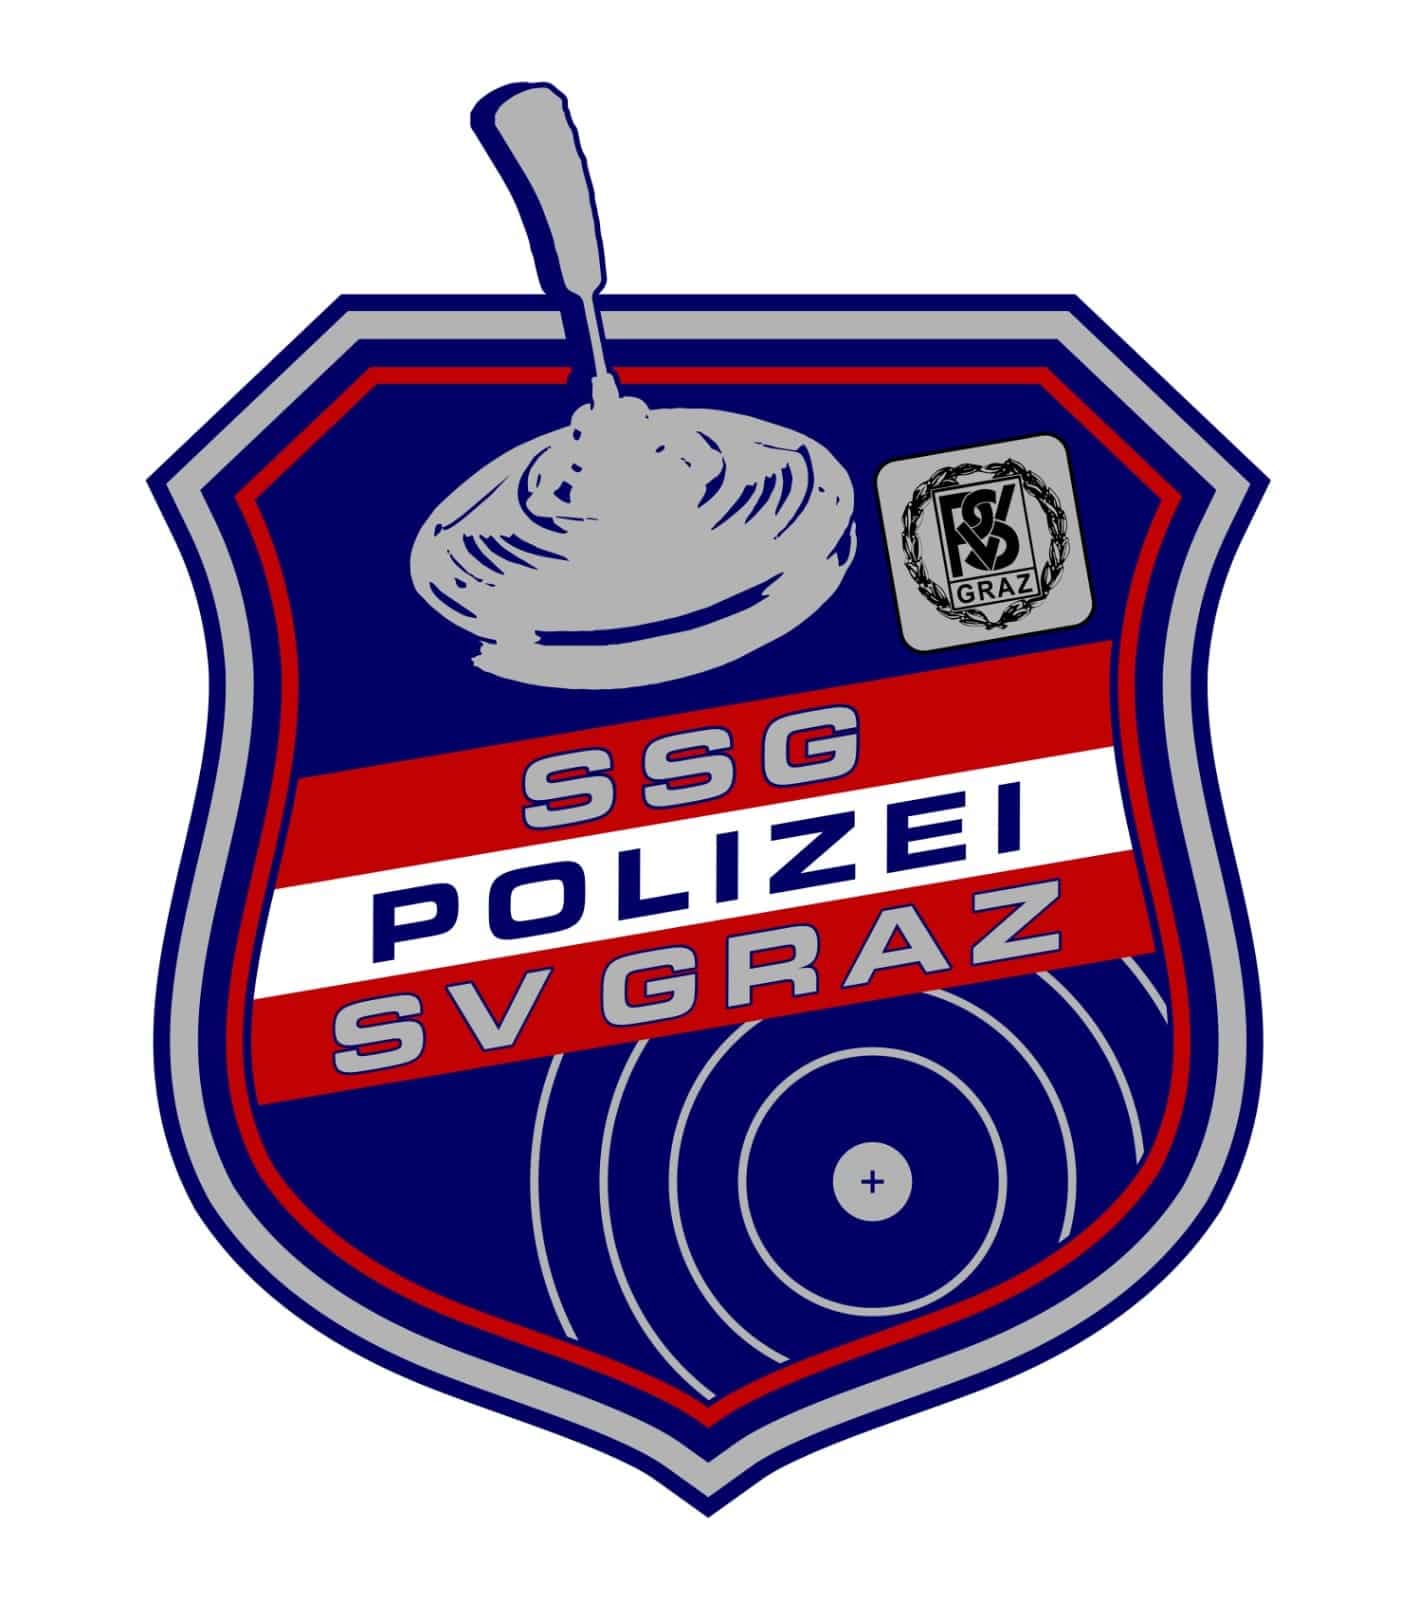 SSG Polizei SV GRAZ II